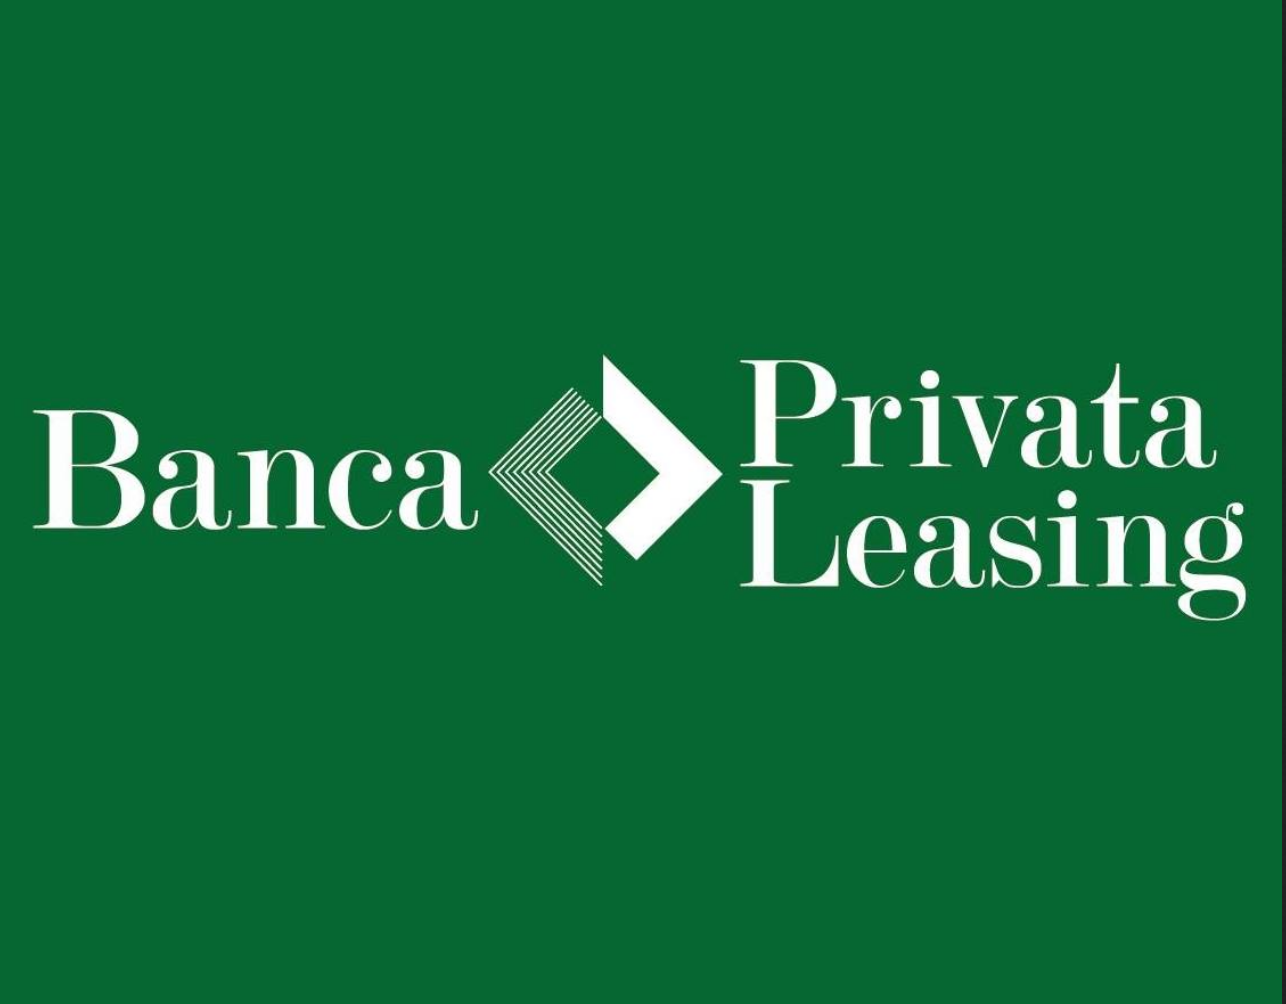 banca-privata-leasing-opinioni-contatti-recensioni